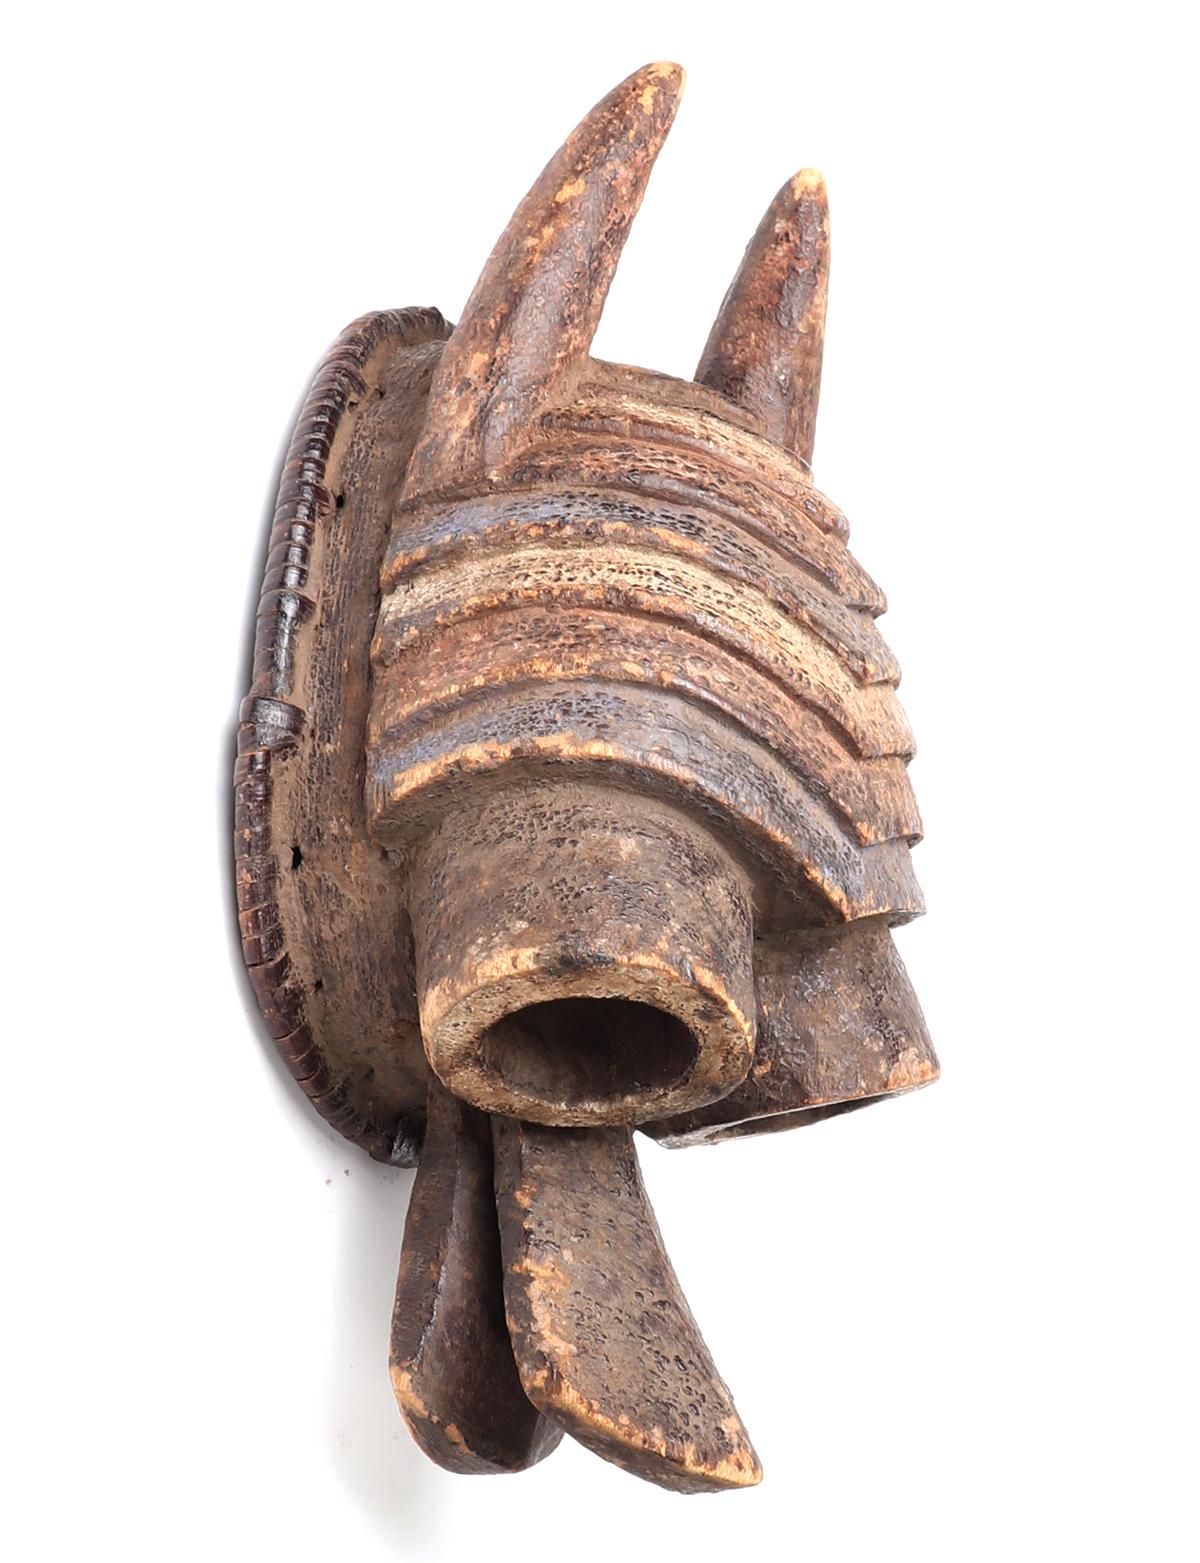 Mumuye Horned Mask, Nigeria